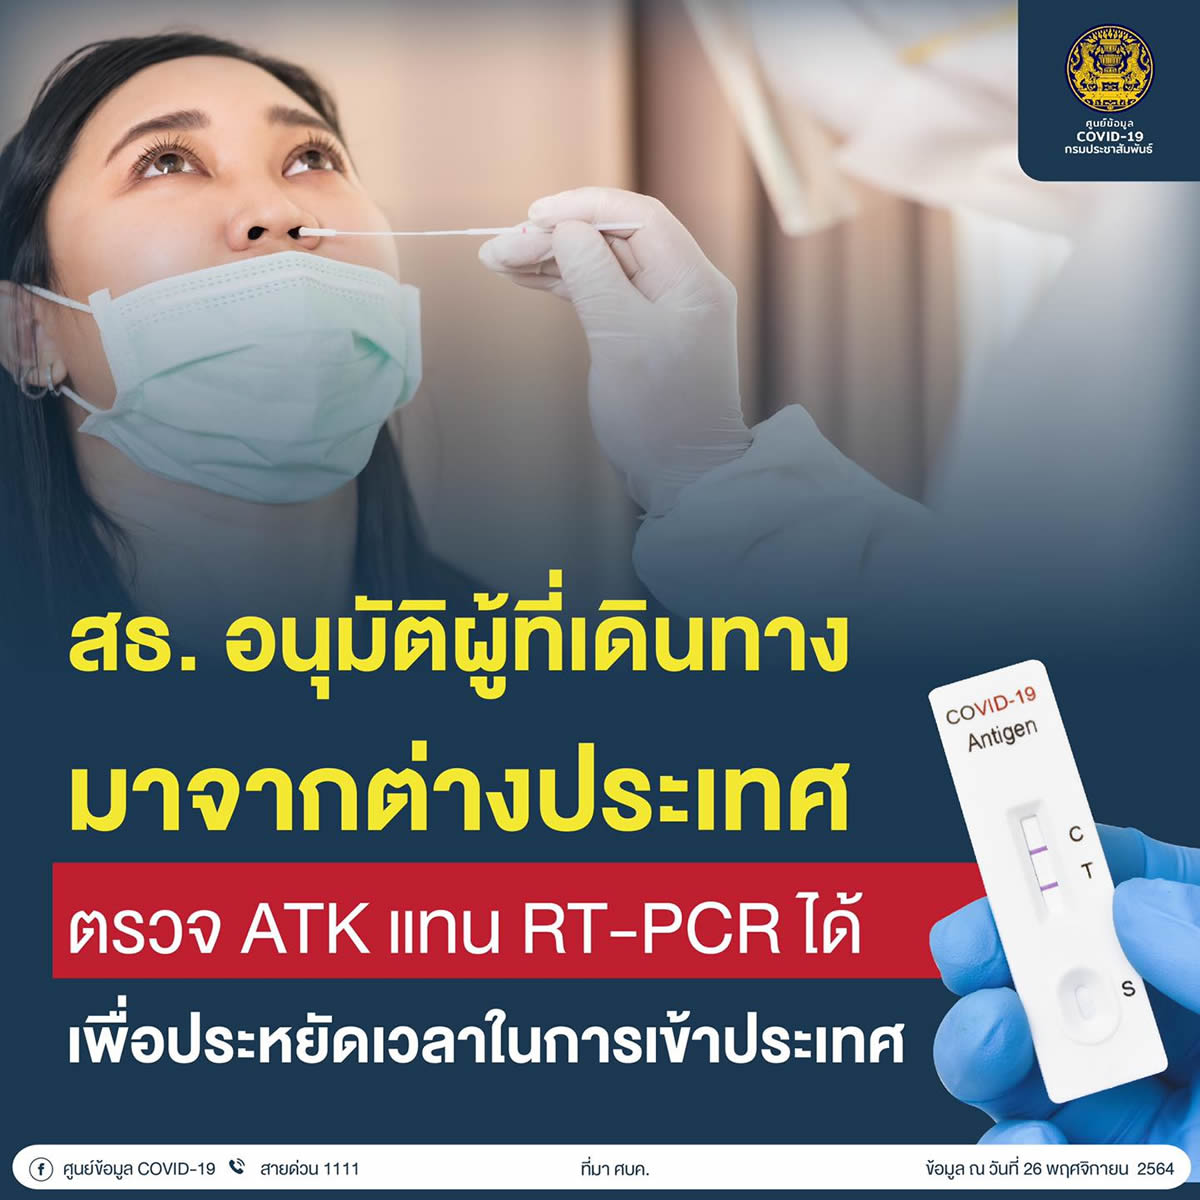 タイ到着直後の検査はATKに変更、2012年12月16日から